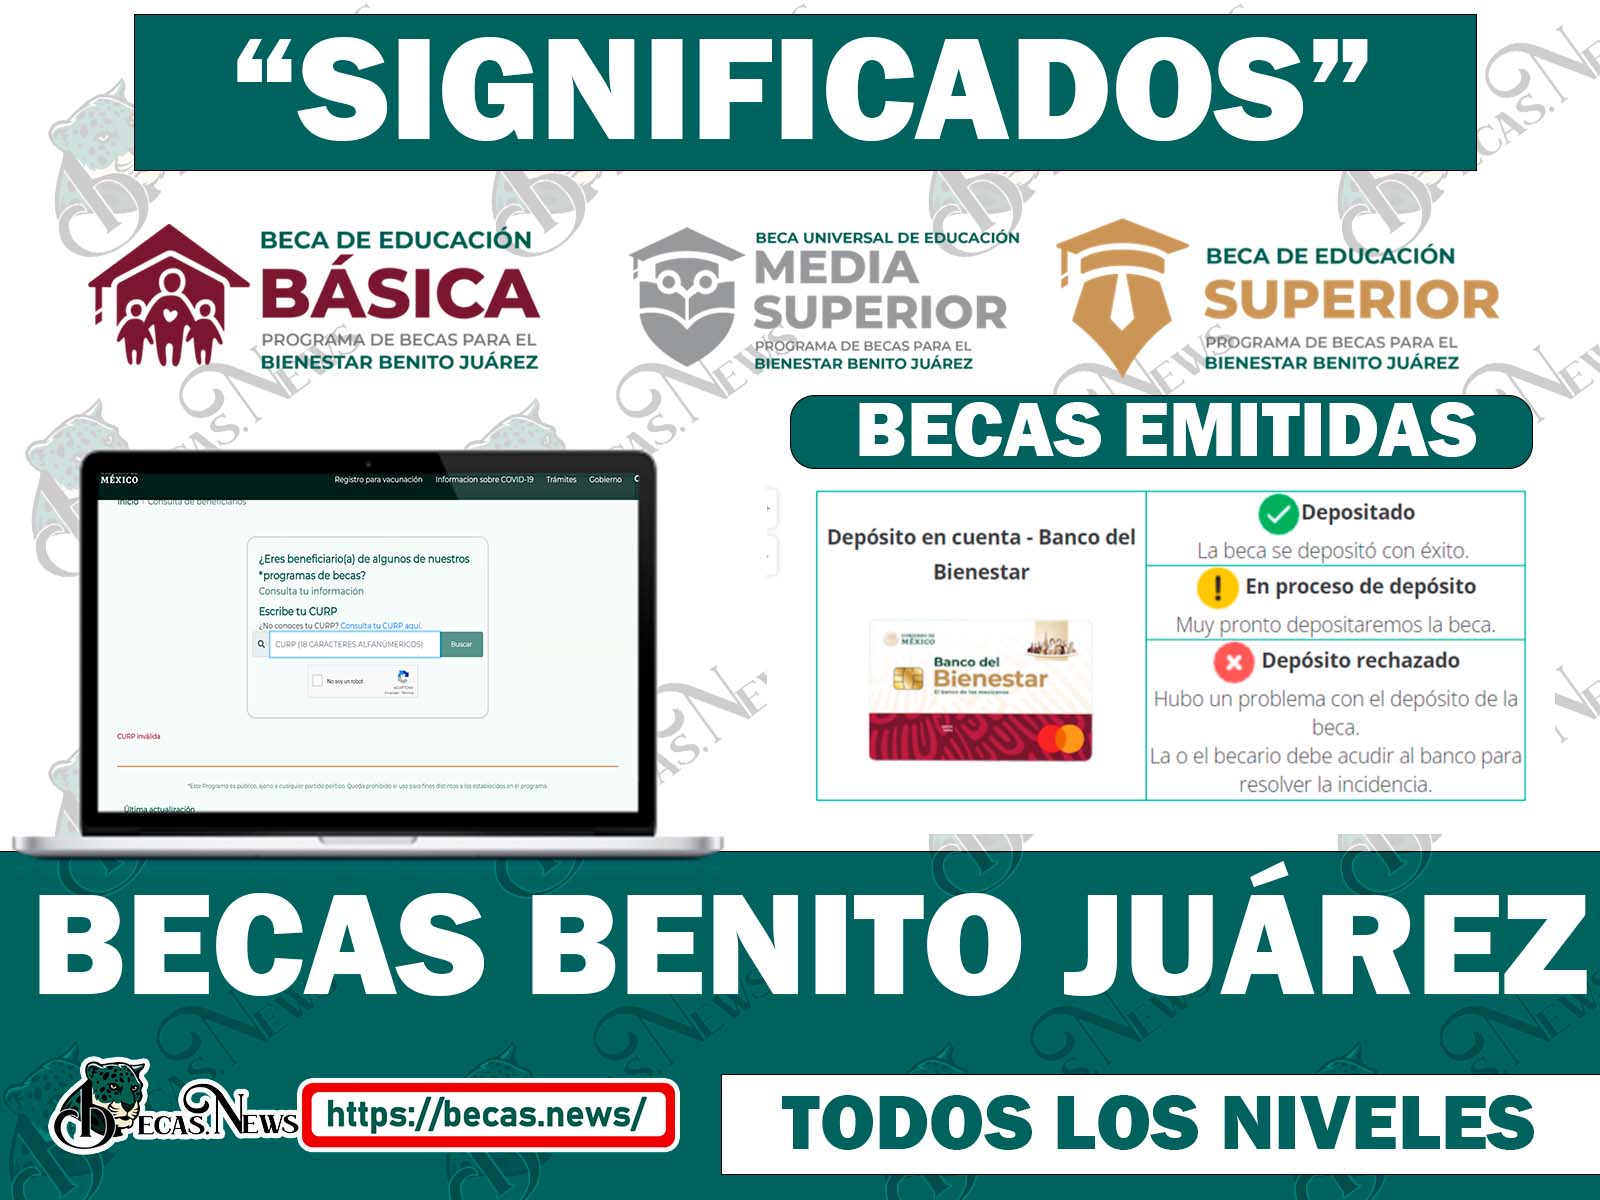 Significado de los Estados de Pago en las Becas Benito Juárez a través de la Tarjeta Bienestar